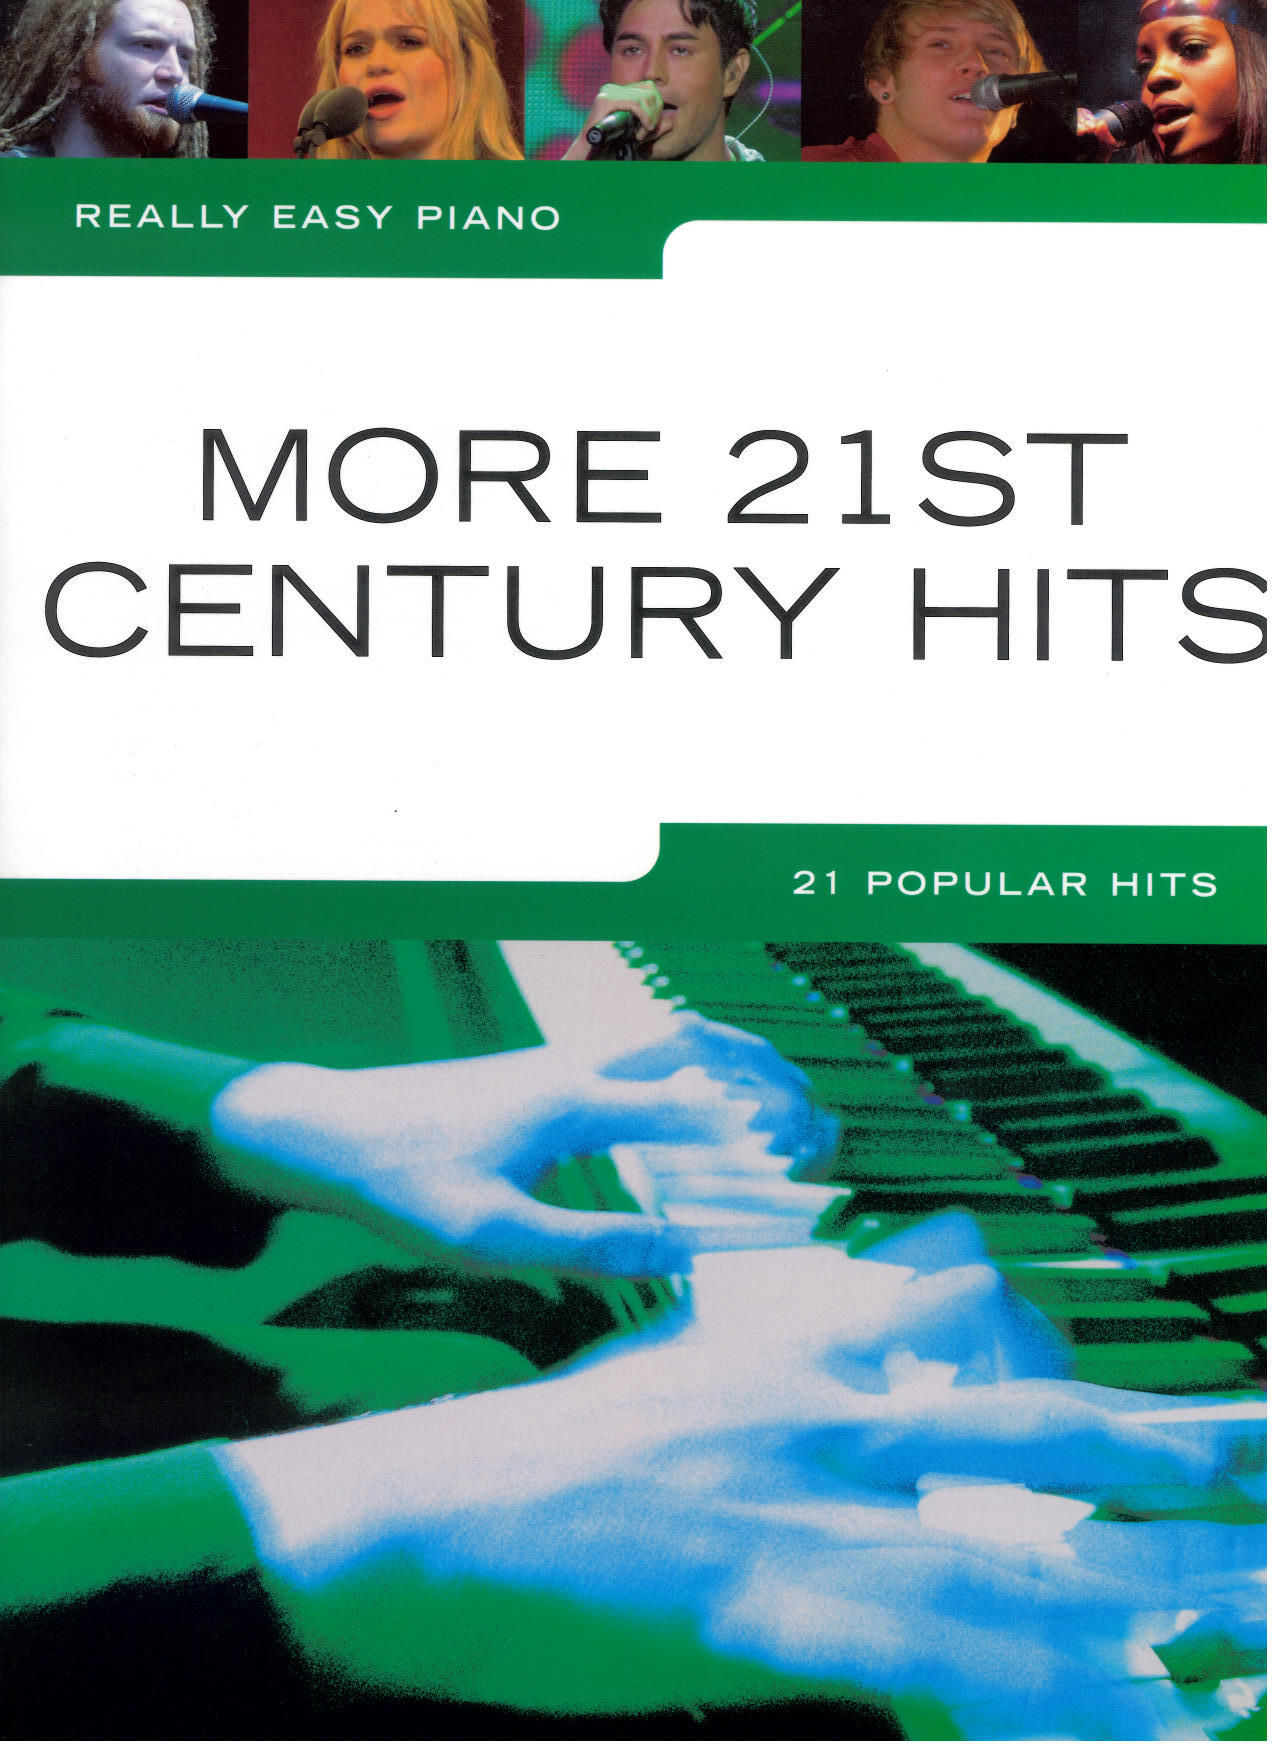 Really Easy Piano: More 21st Century Hits : photo 1